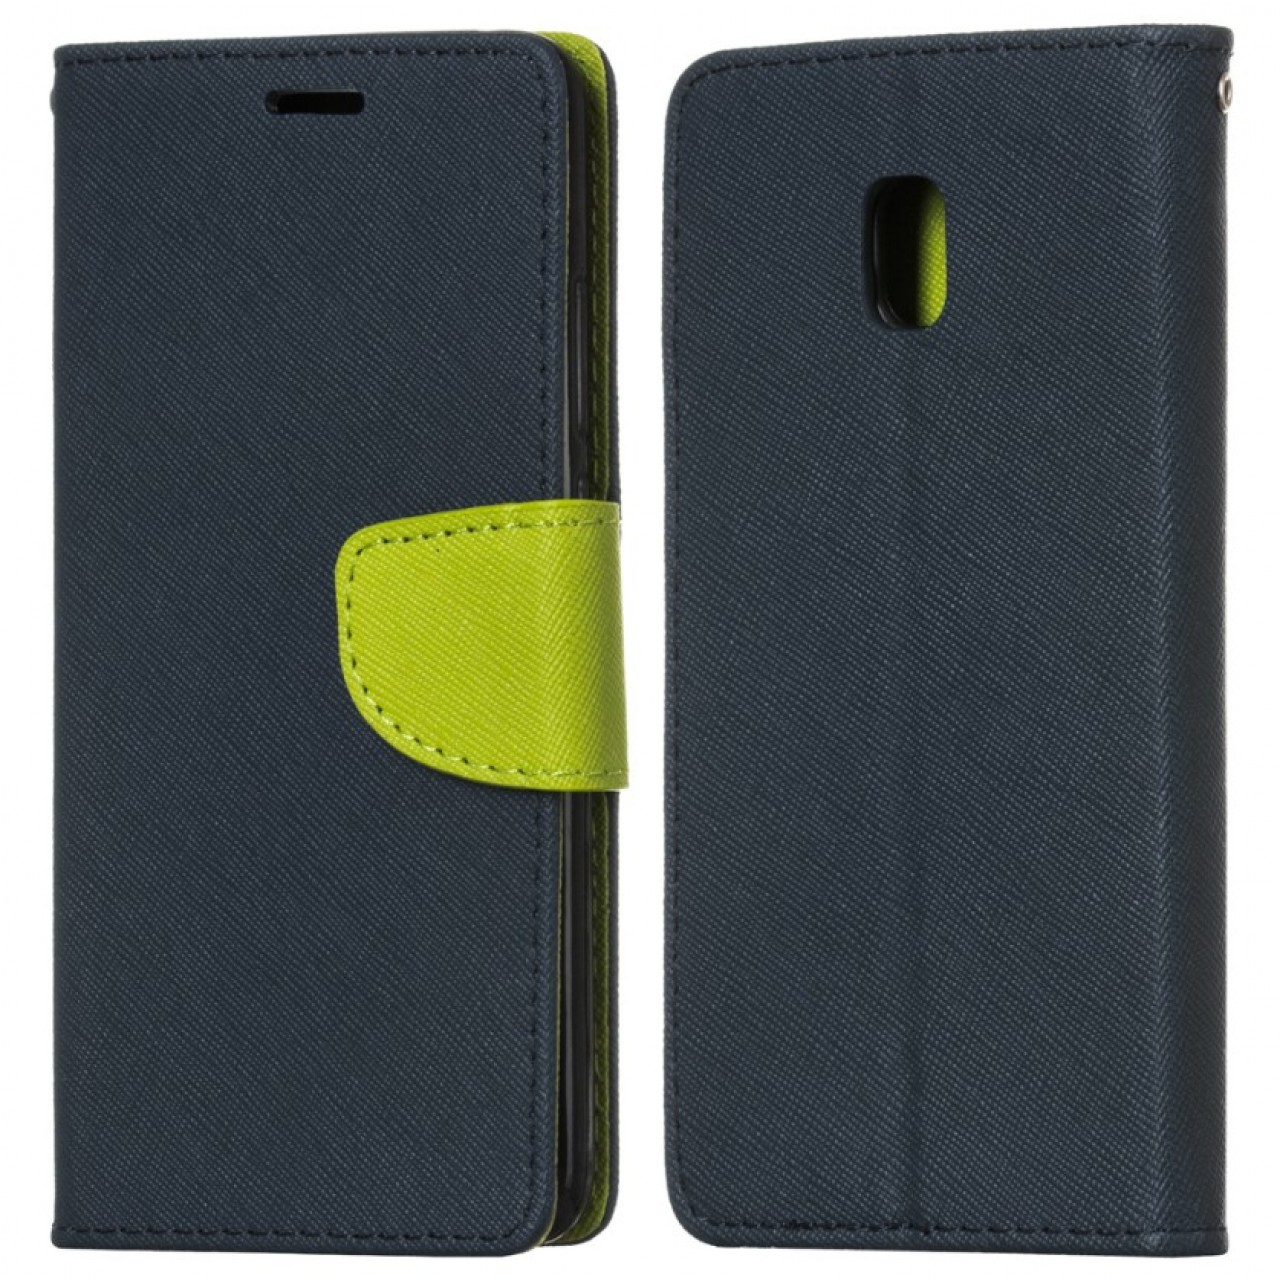 Θήκη Samsung Galaxy J3 (2017) PU Leather Πορτοφόλι flip Fancy Diary - 4274 - Σκούρο Μπλέ - OEM